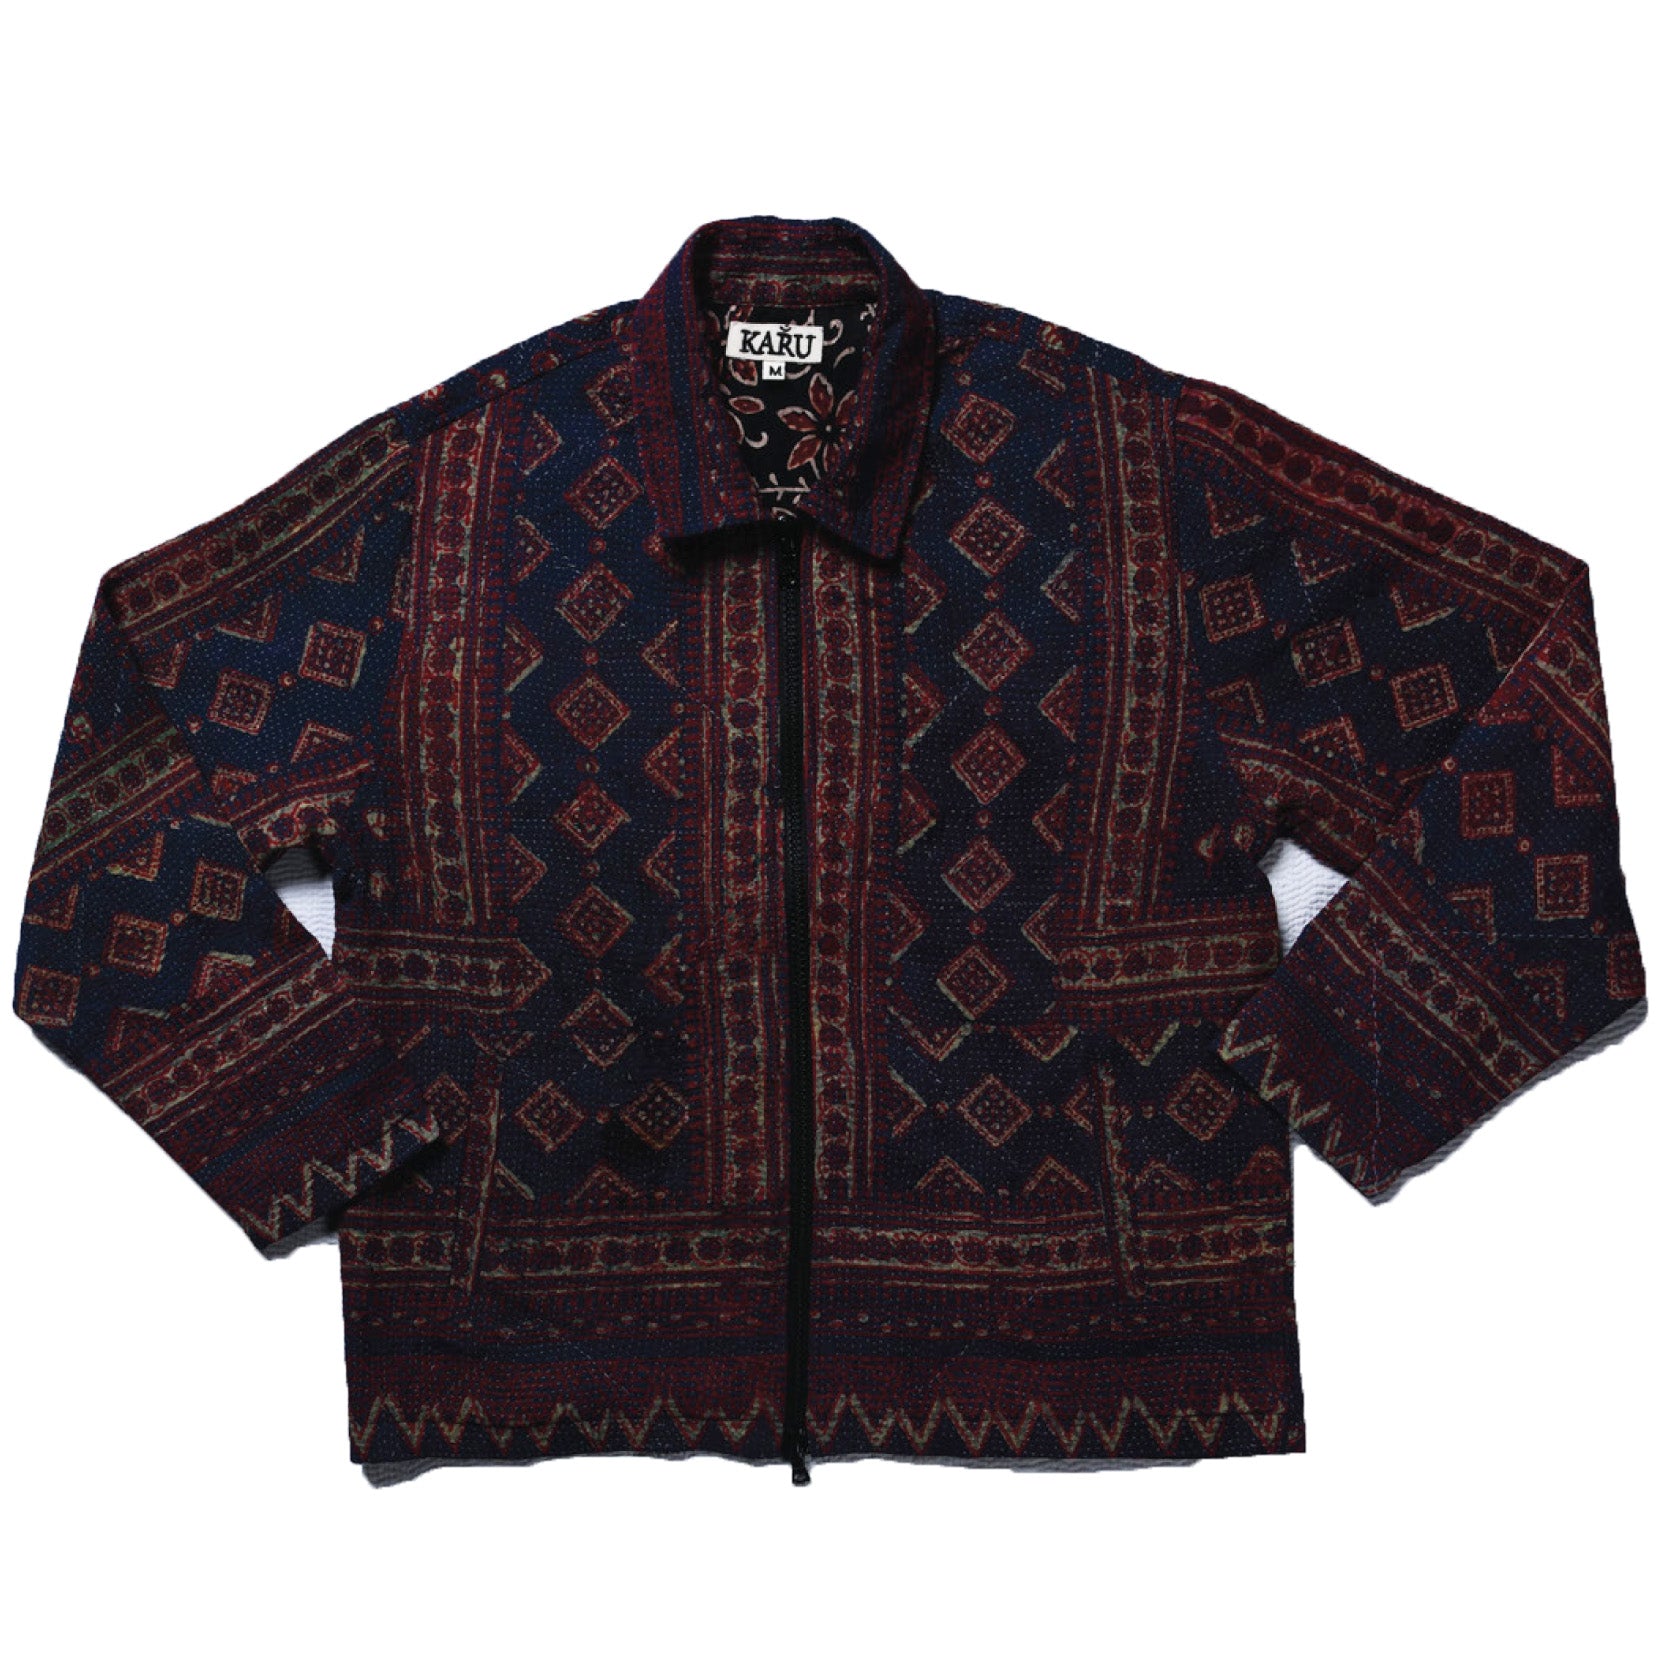 Karu Research Vintage Kantha Work Jacket Leo Boutique